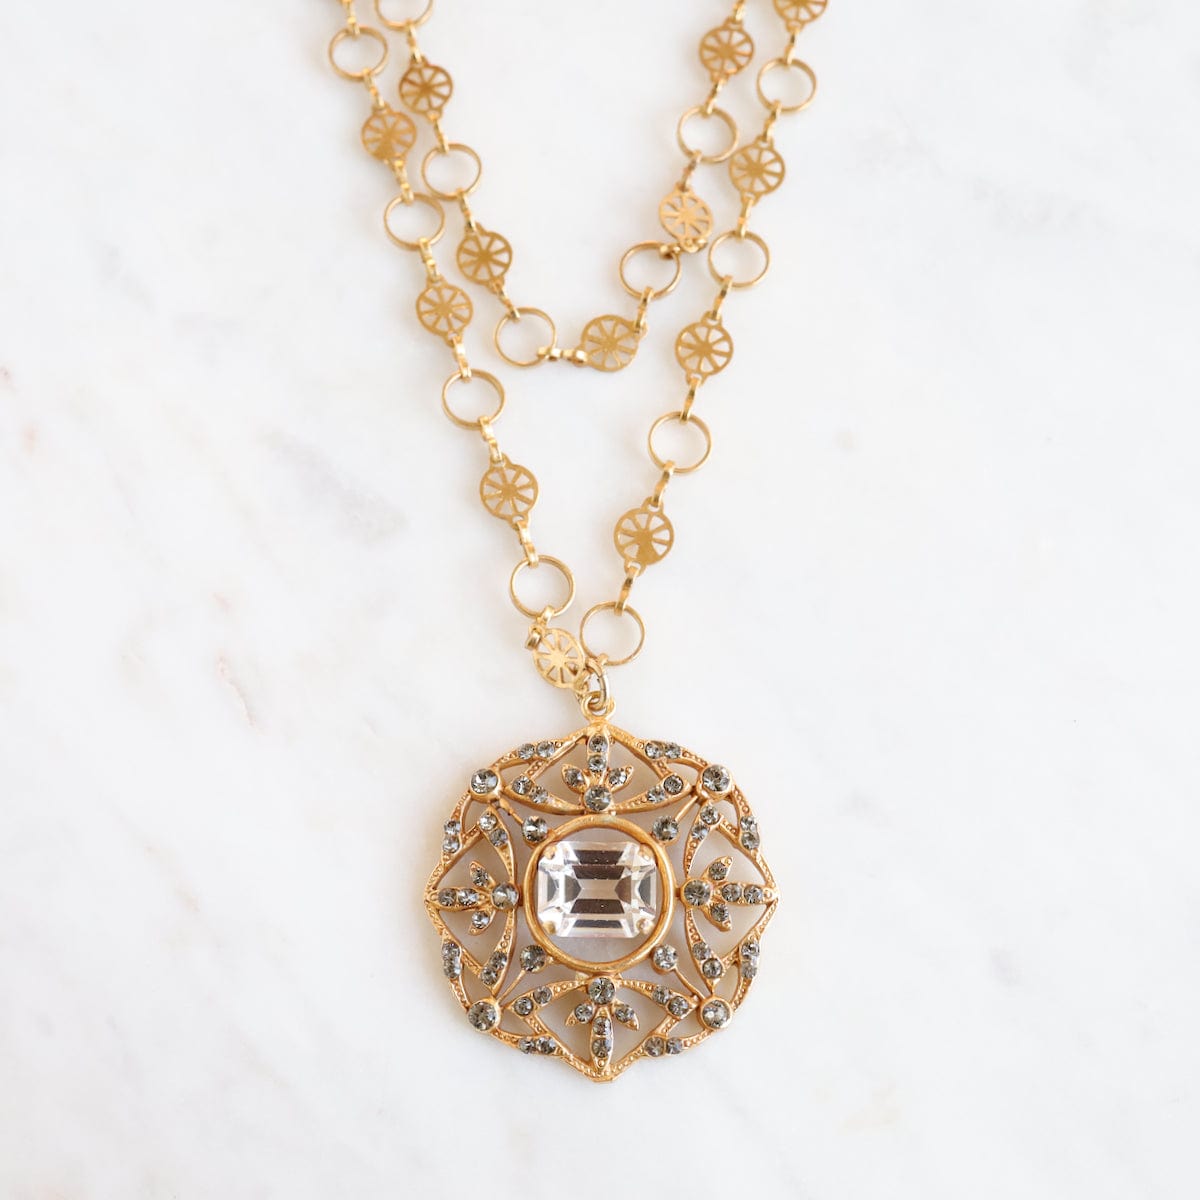 NKL-JM Gold Crystal Medallion Necklace